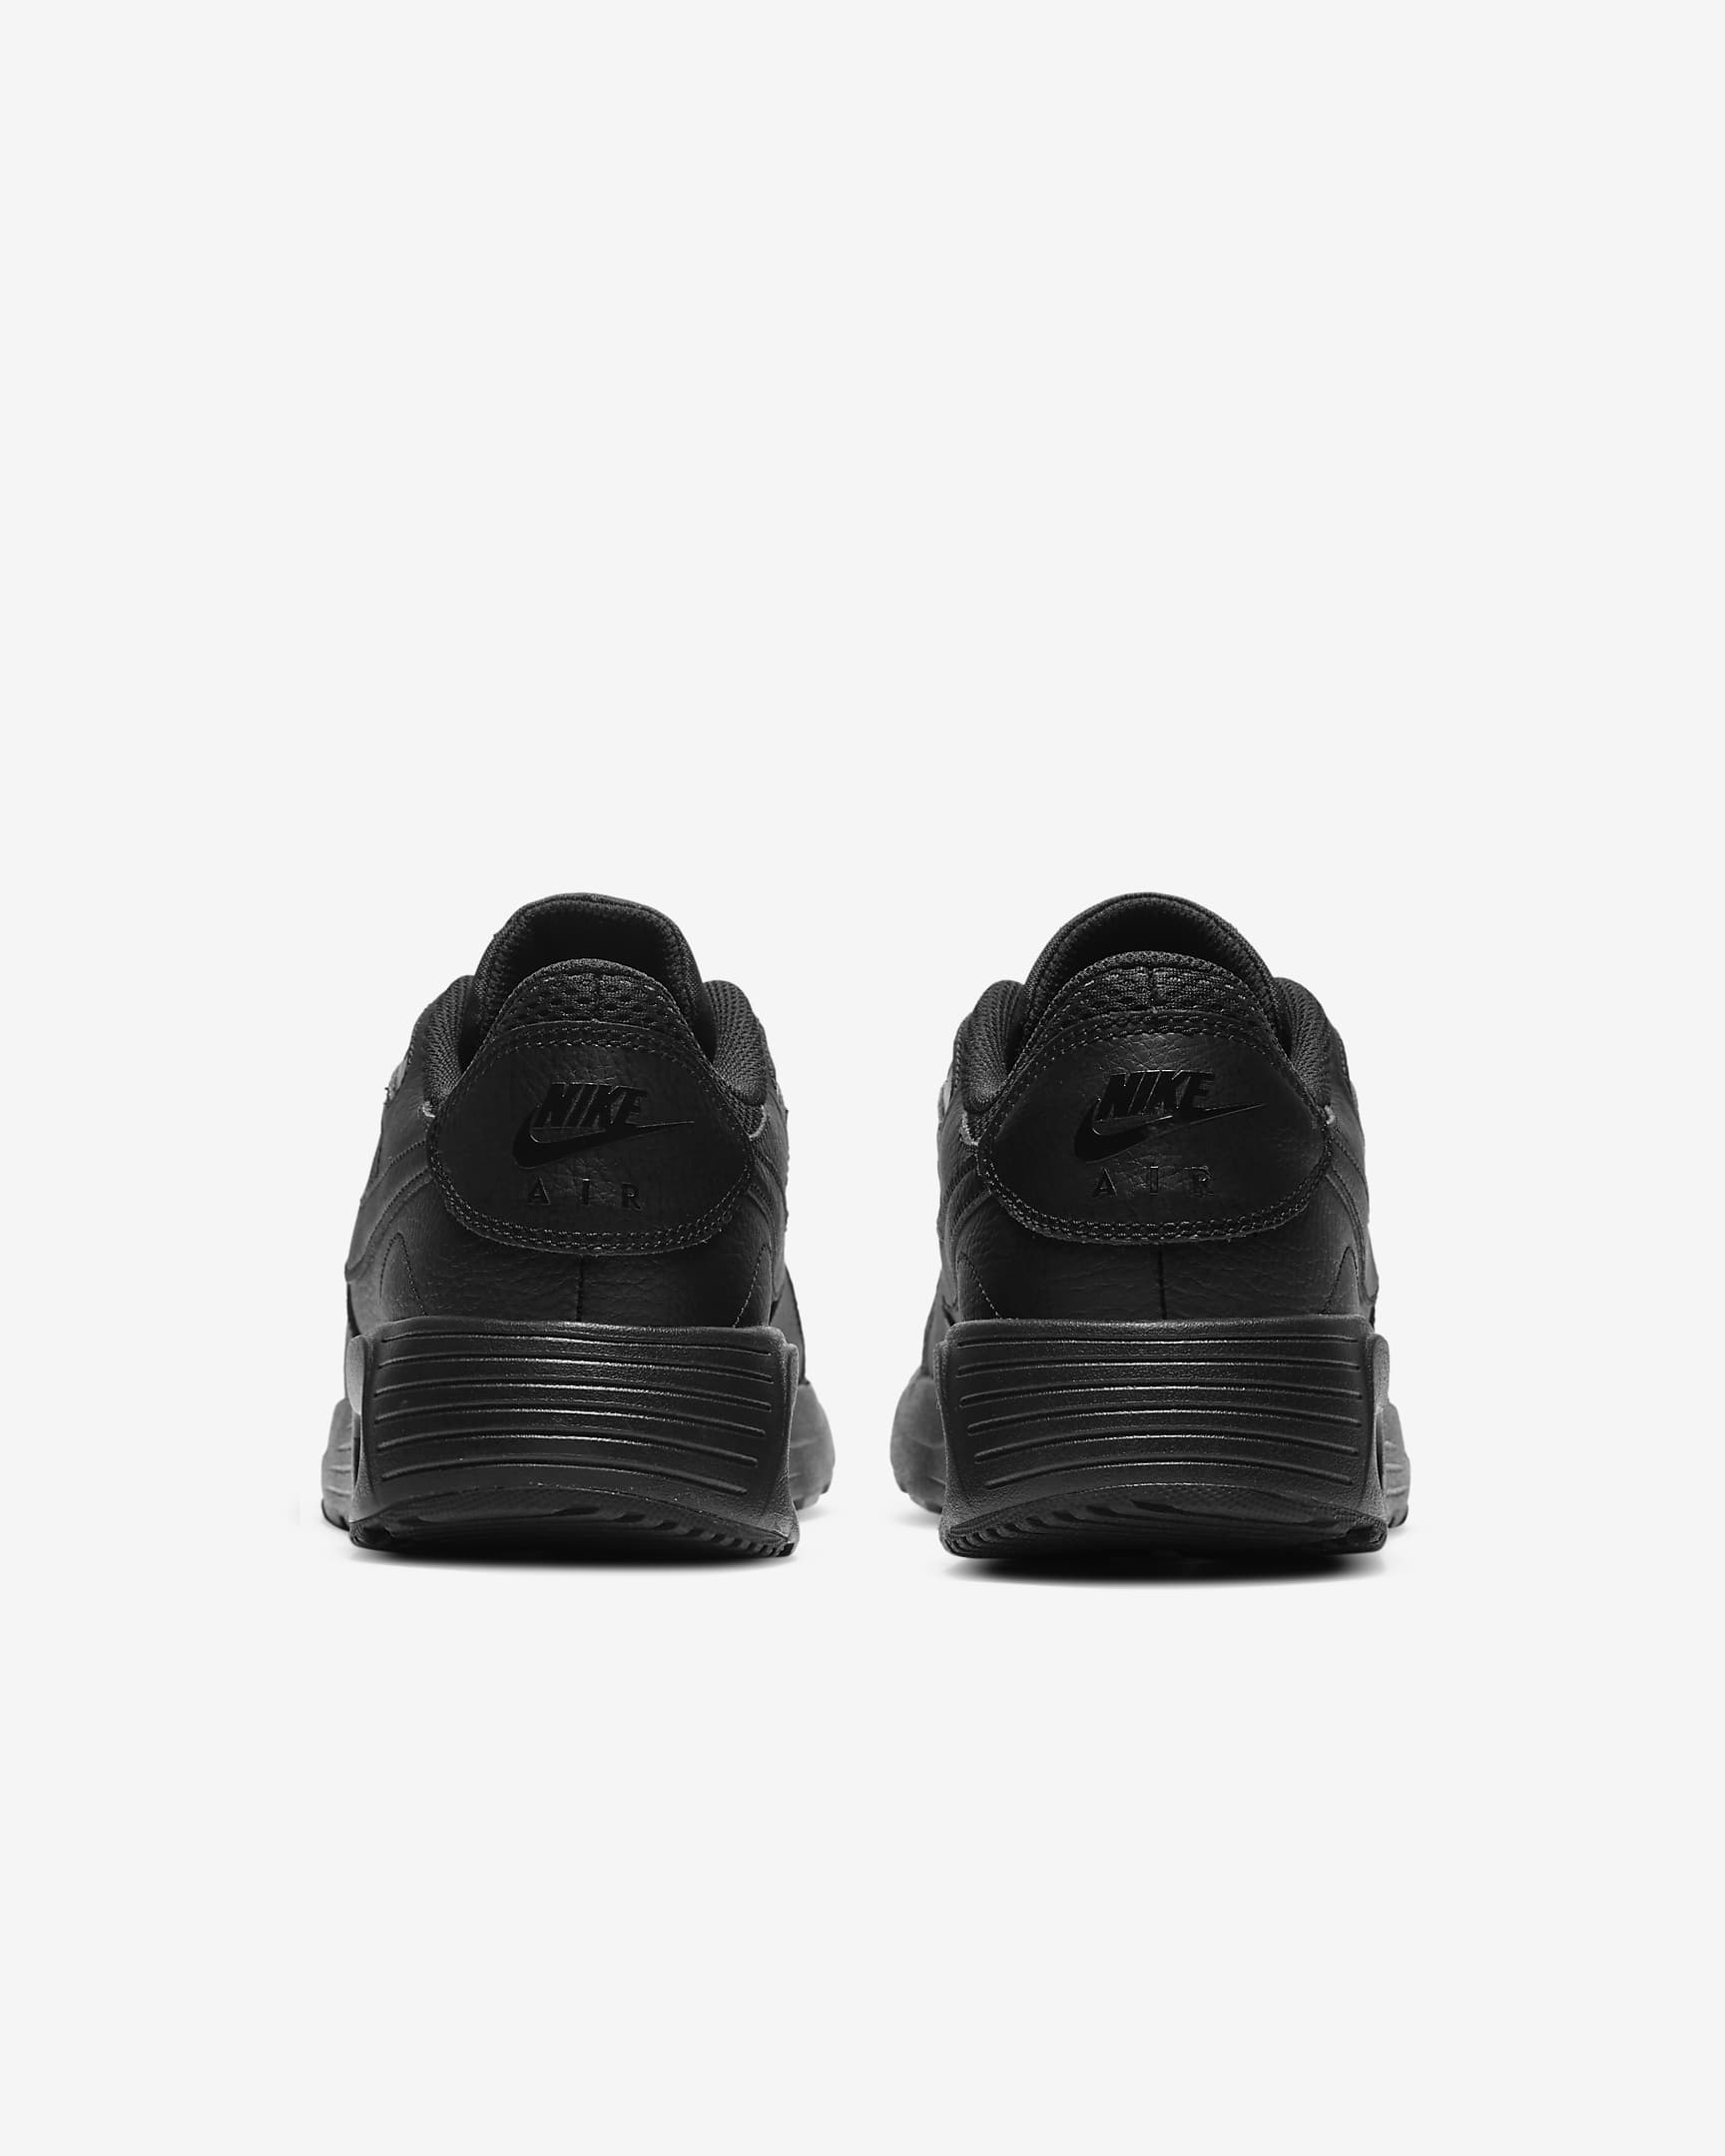 Nike Air Max SC-sko til mænd - sort/sort/sort